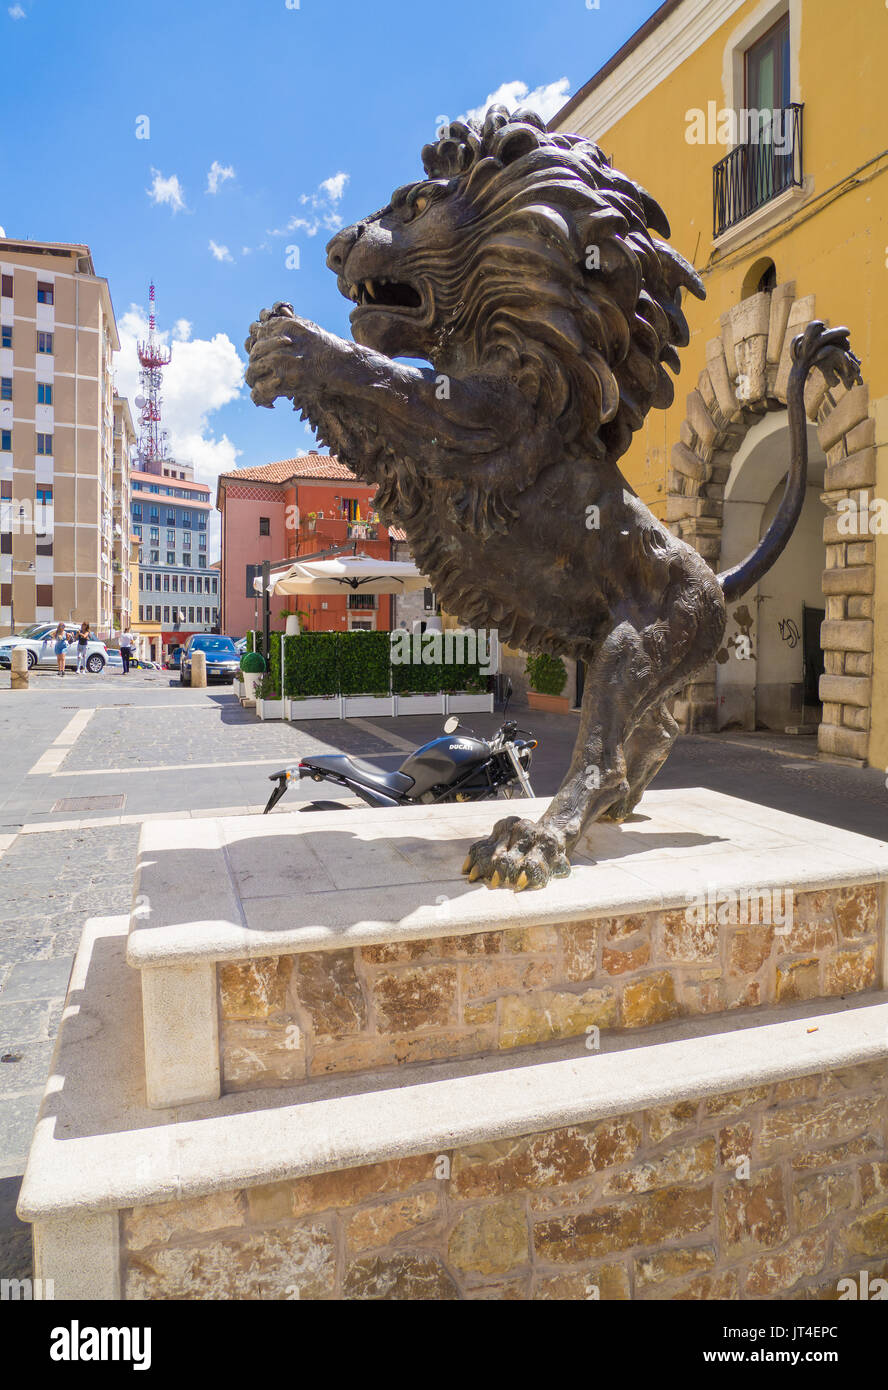 POTENZA, ITALIE - La capitale de la région Basilicate, en Italie méridionale, ville reconstruite après le tremblement de terre dévastateur de l'année 1980. Banque D'Images